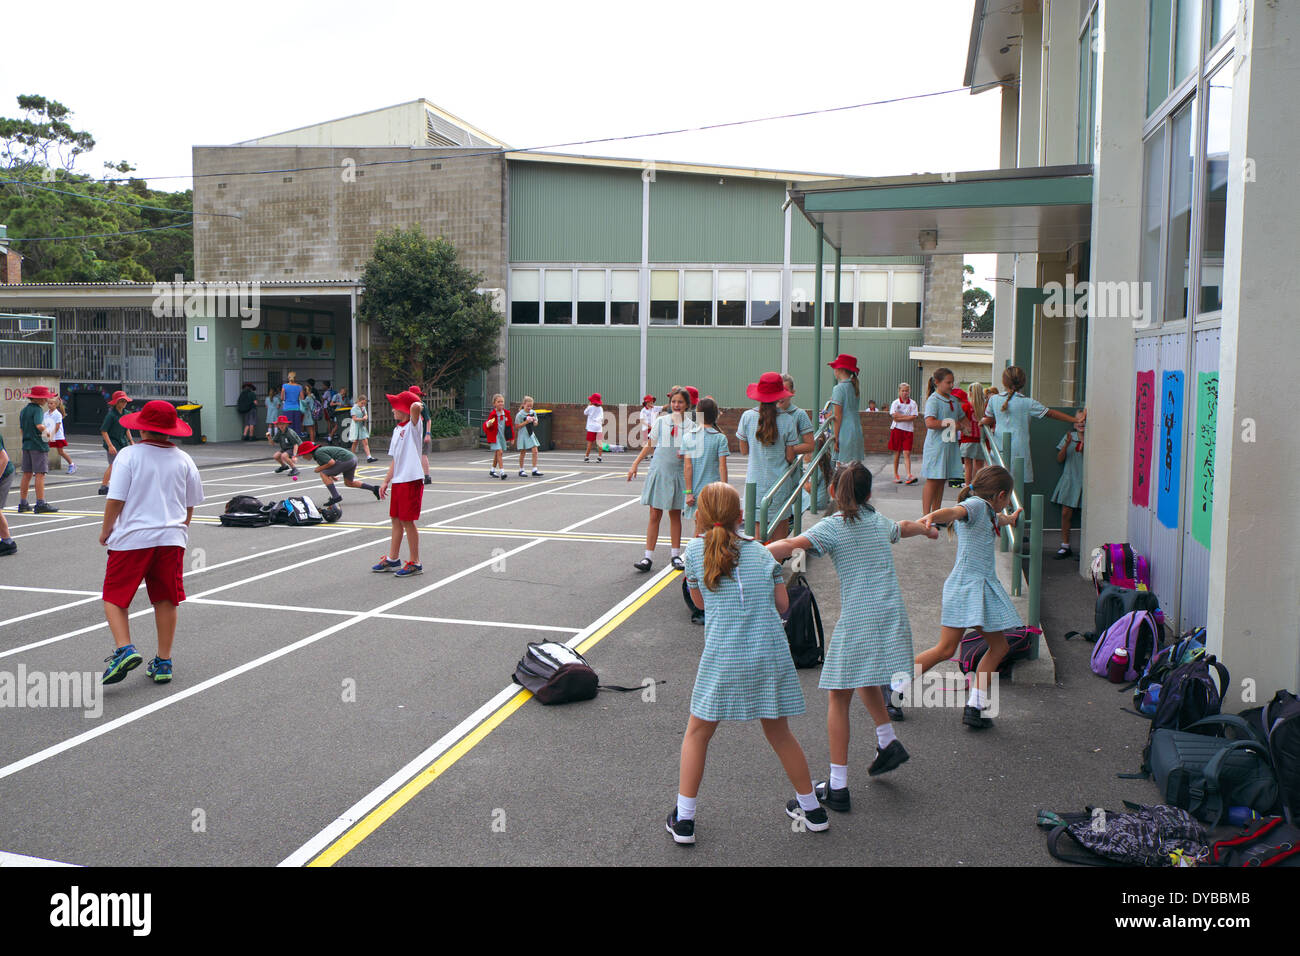 Kinder der Grundschule in Sydney auf dem Schulspielplatz in Sydney NSW Australien spielen während einer Klassenpause in Schuluniform, 2014 Stockfoto